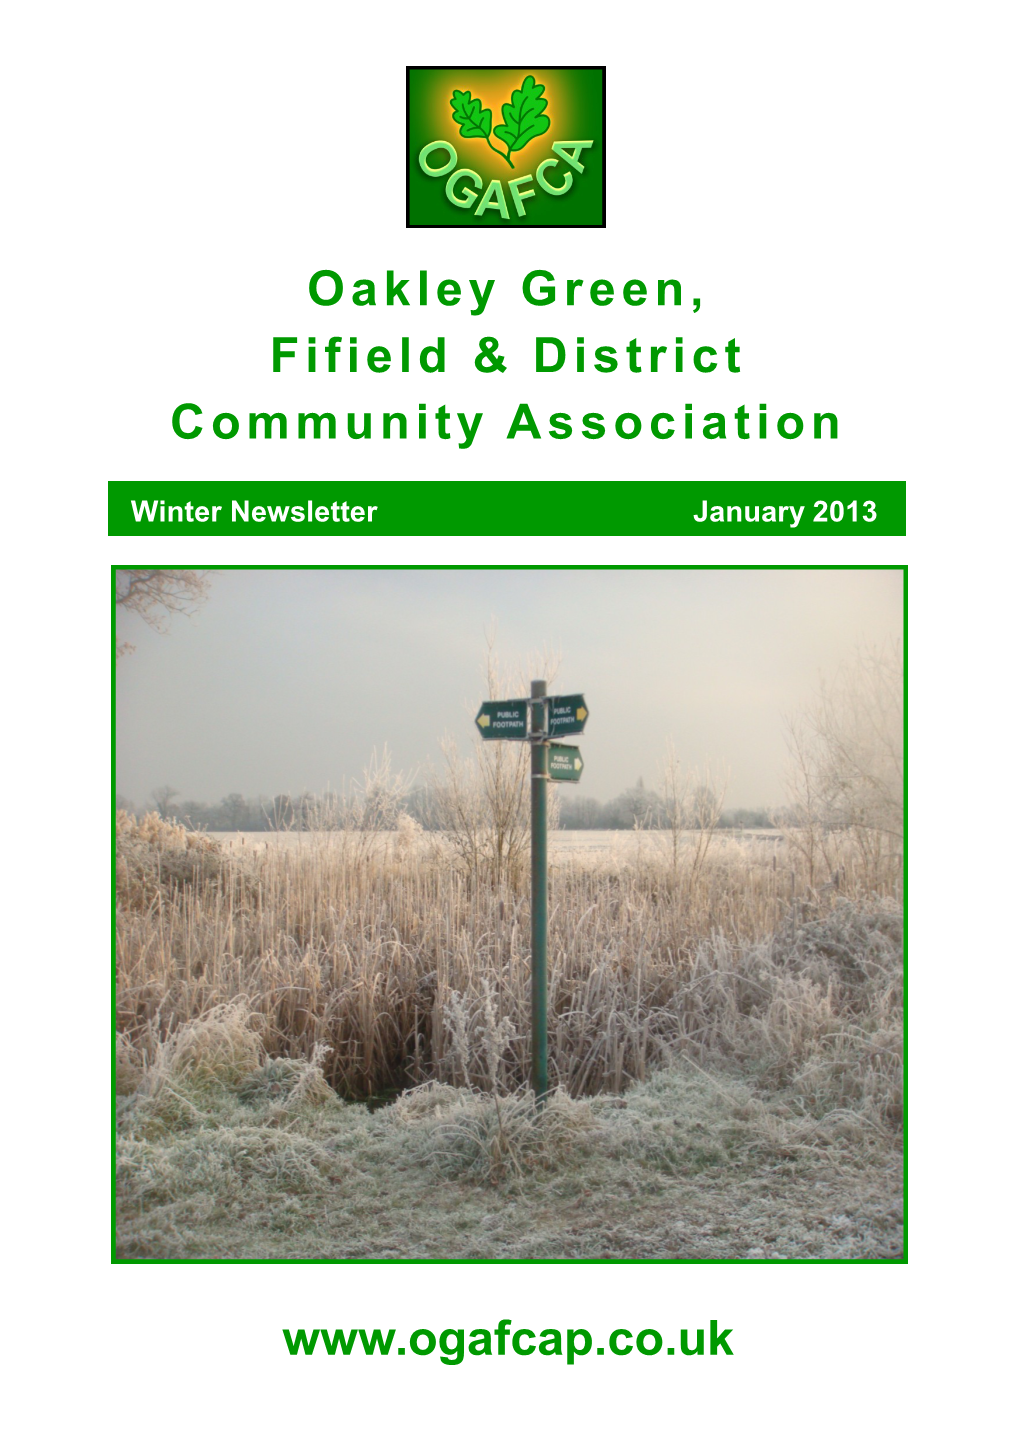 Oakley Green, Fifield & District Community Association Www